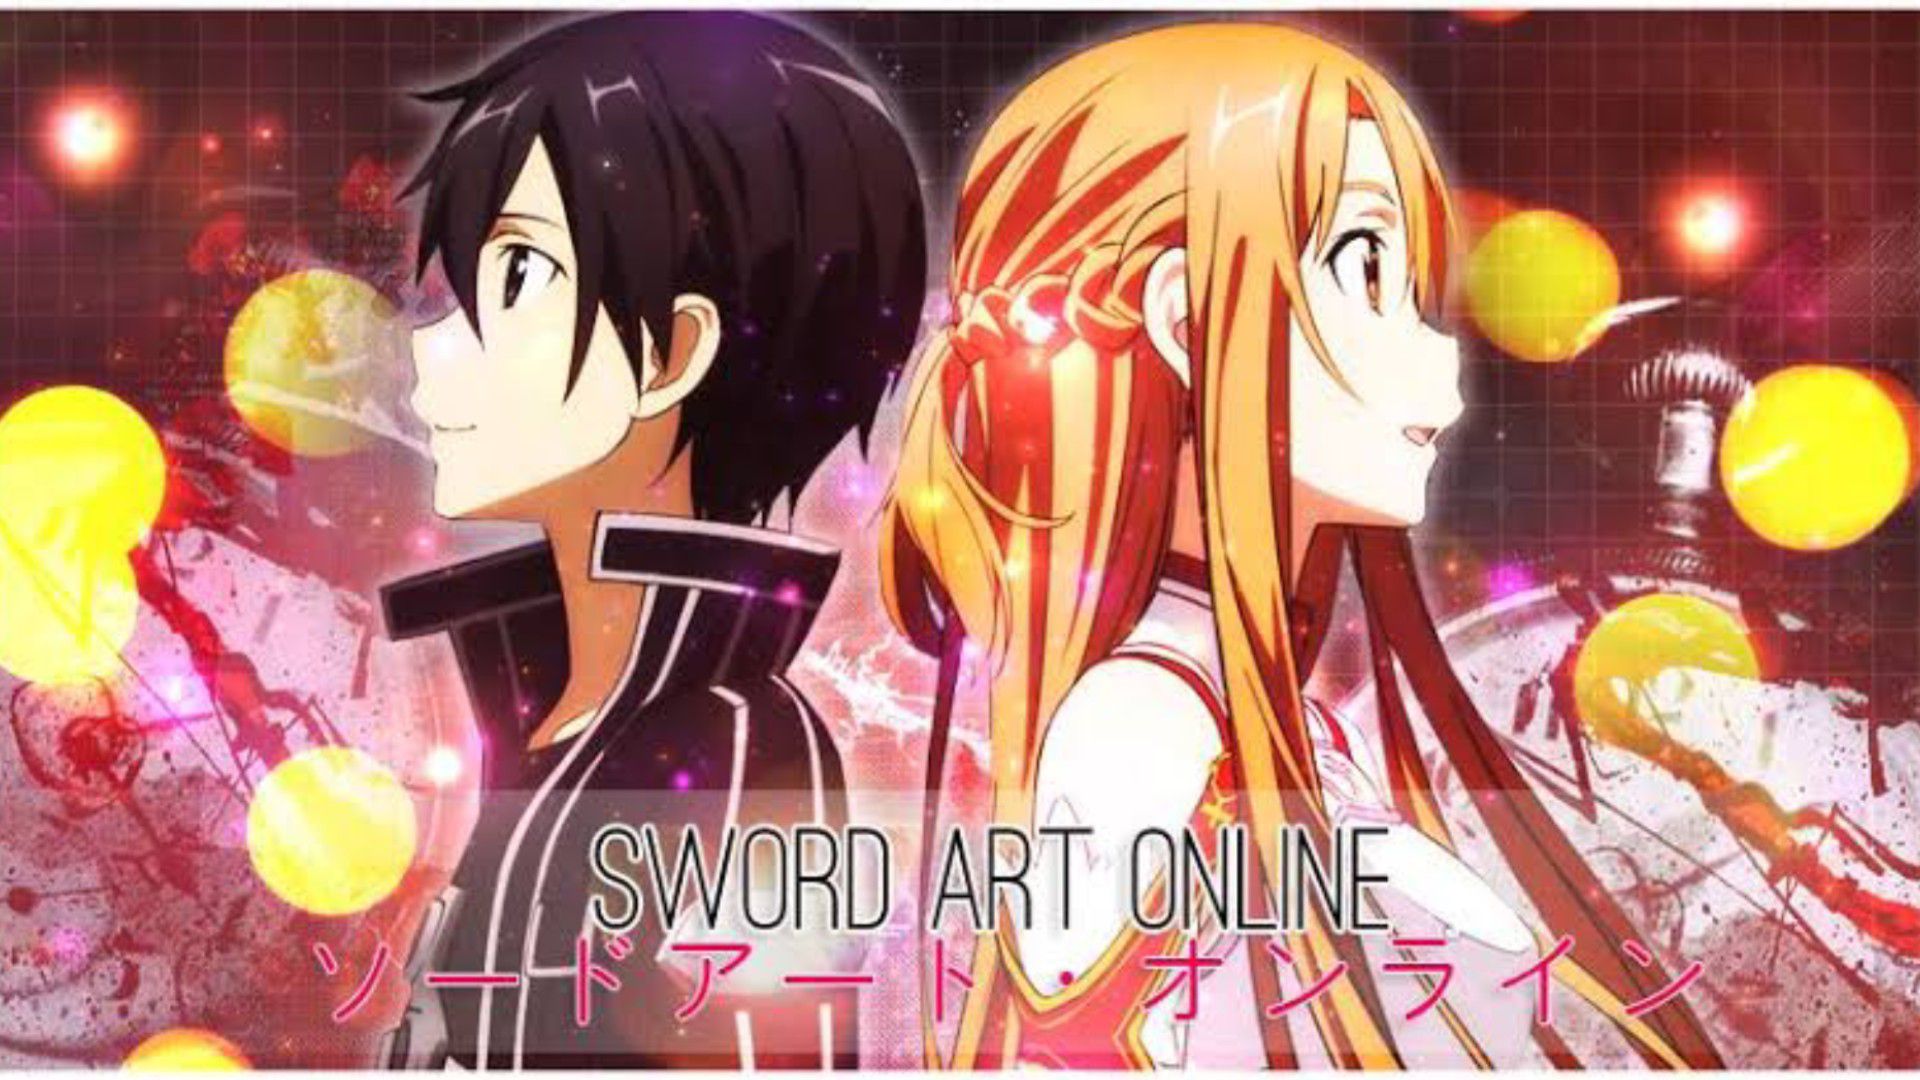 Sword Art Online: Episode 11